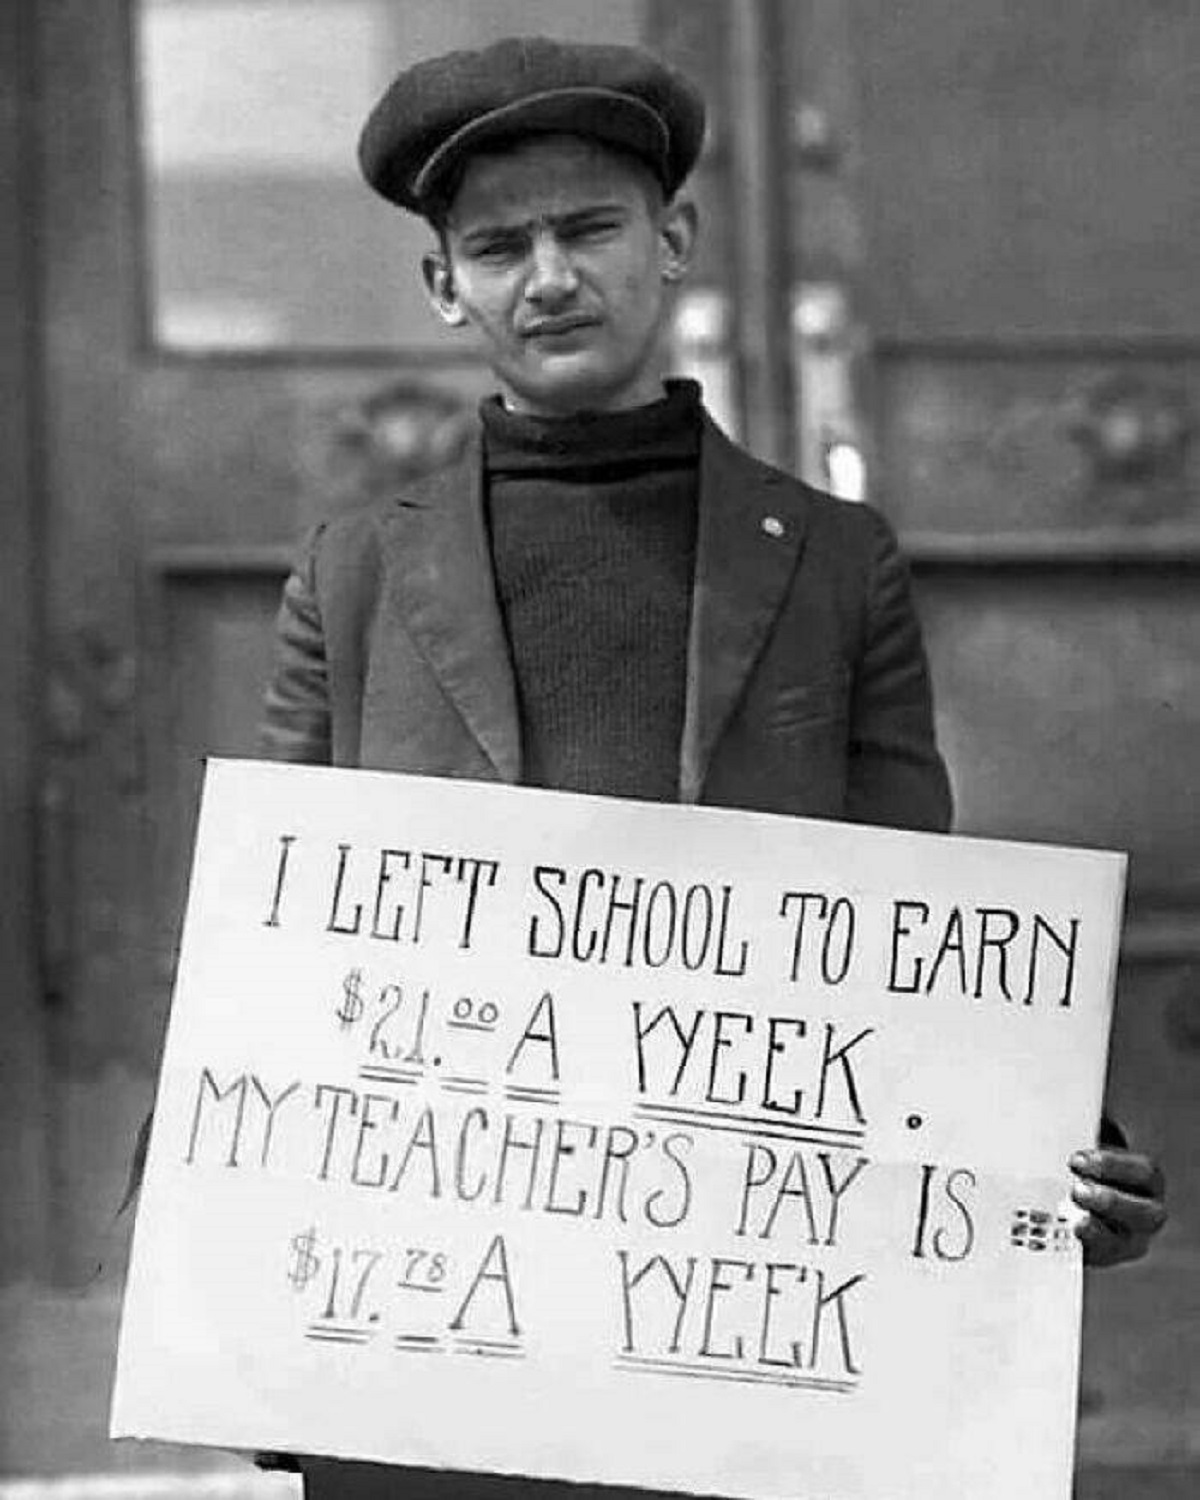 left school to earn - I Left School To Earn $21.90 A Week. My Teacher'S Pay Is $17.28 A Week